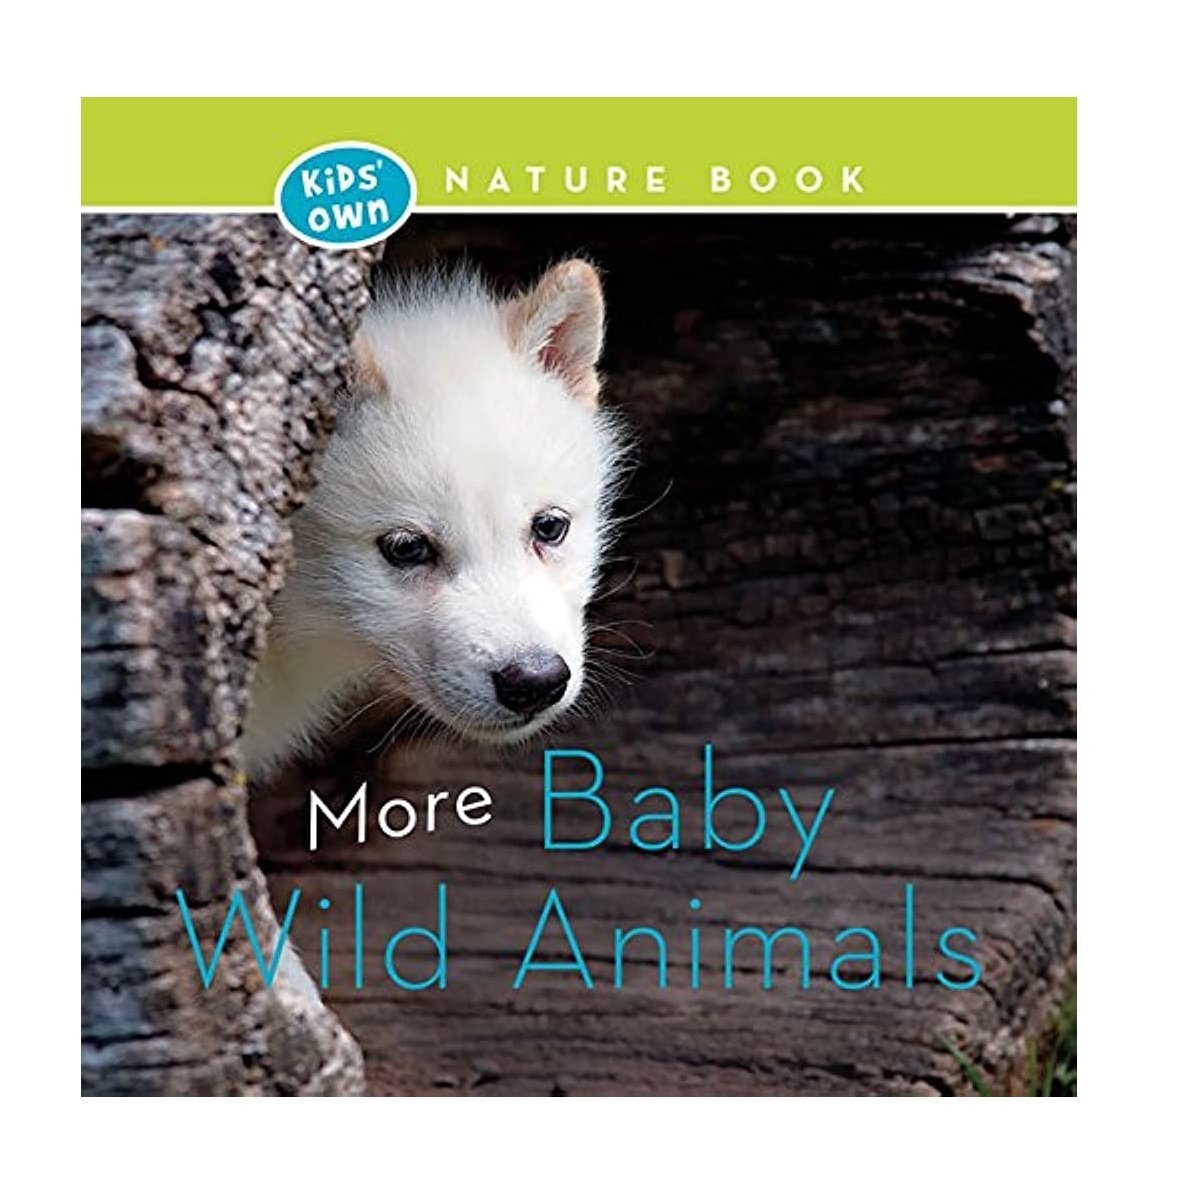 Kids' Own Nature Books: More Baby Wild Animals